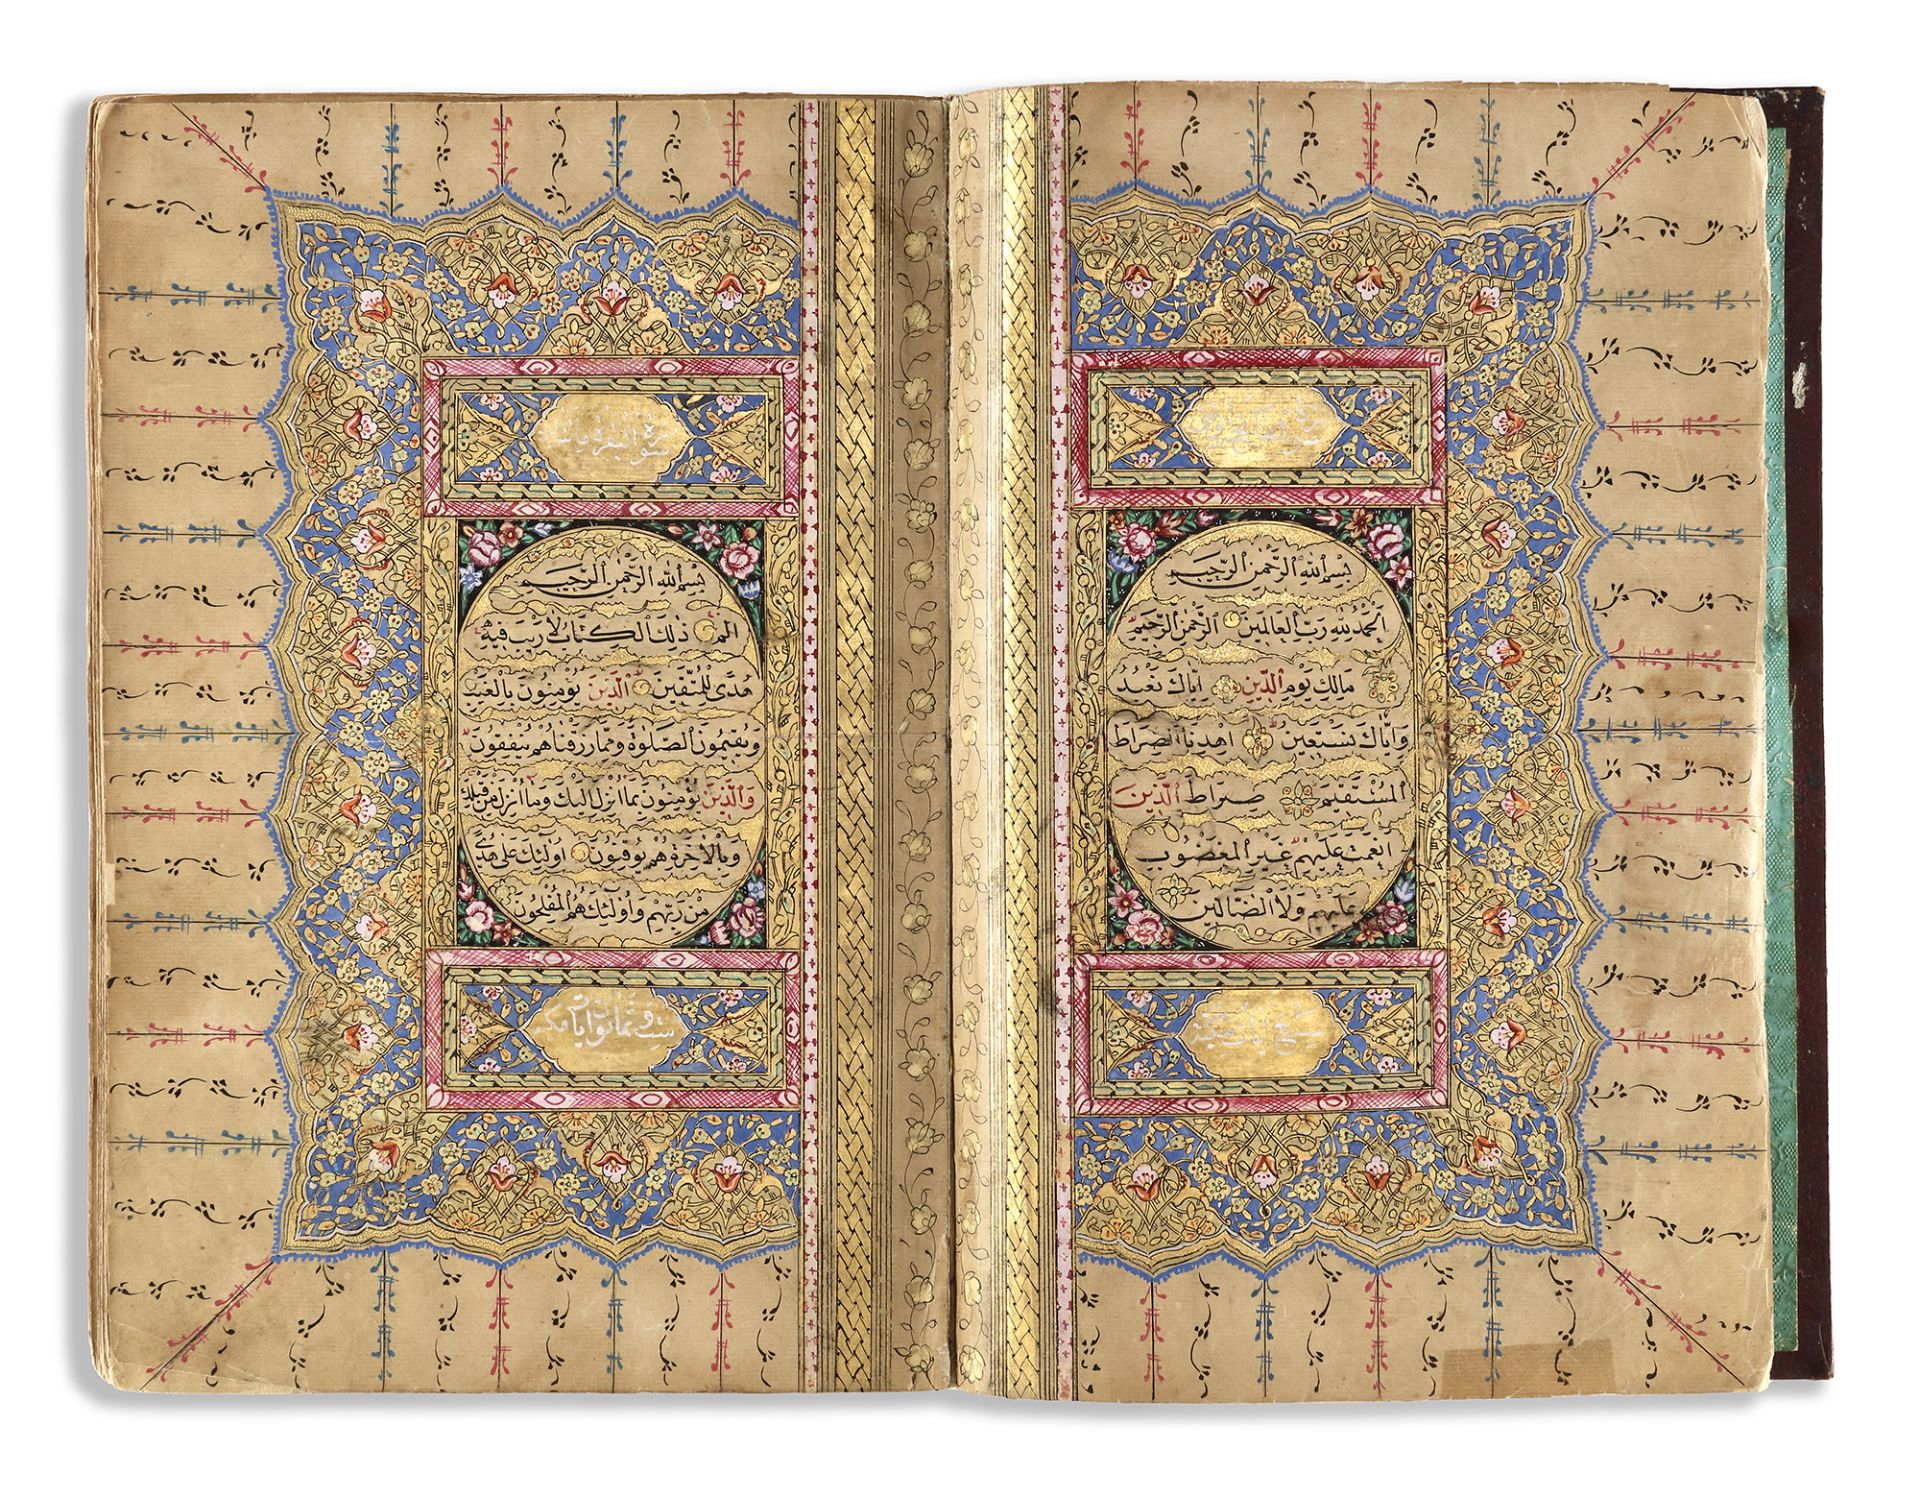 AN ILLUMINATED OTTOMAN QURAN SIGNED MUSTAFA RUSDI, OTTOMAN TURKEY, DATED 1280 AH/1863 AD